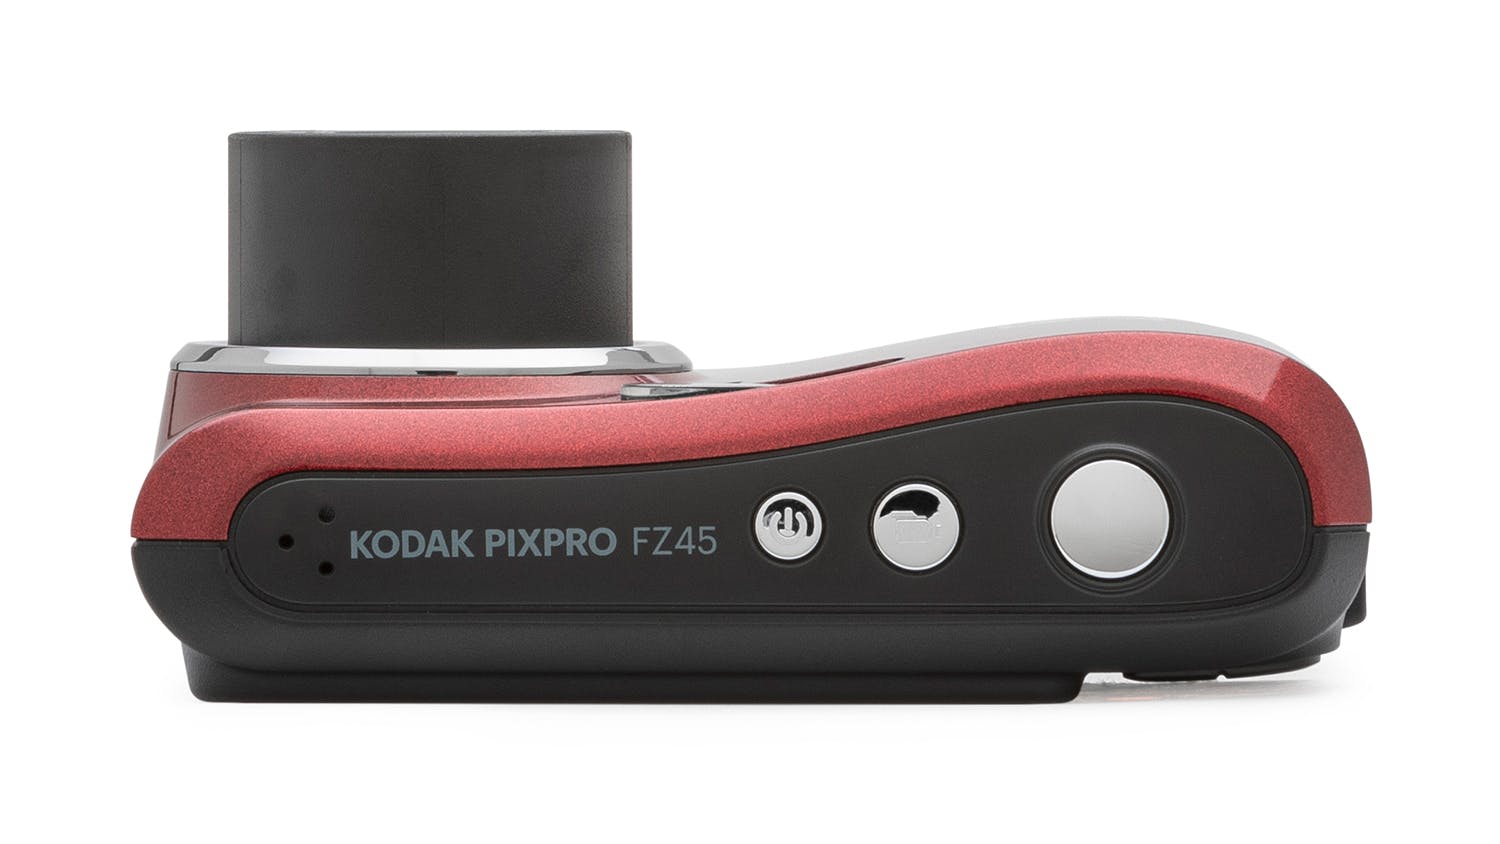 Kodak Pixpro Fz45 Review - Lemon8 Search